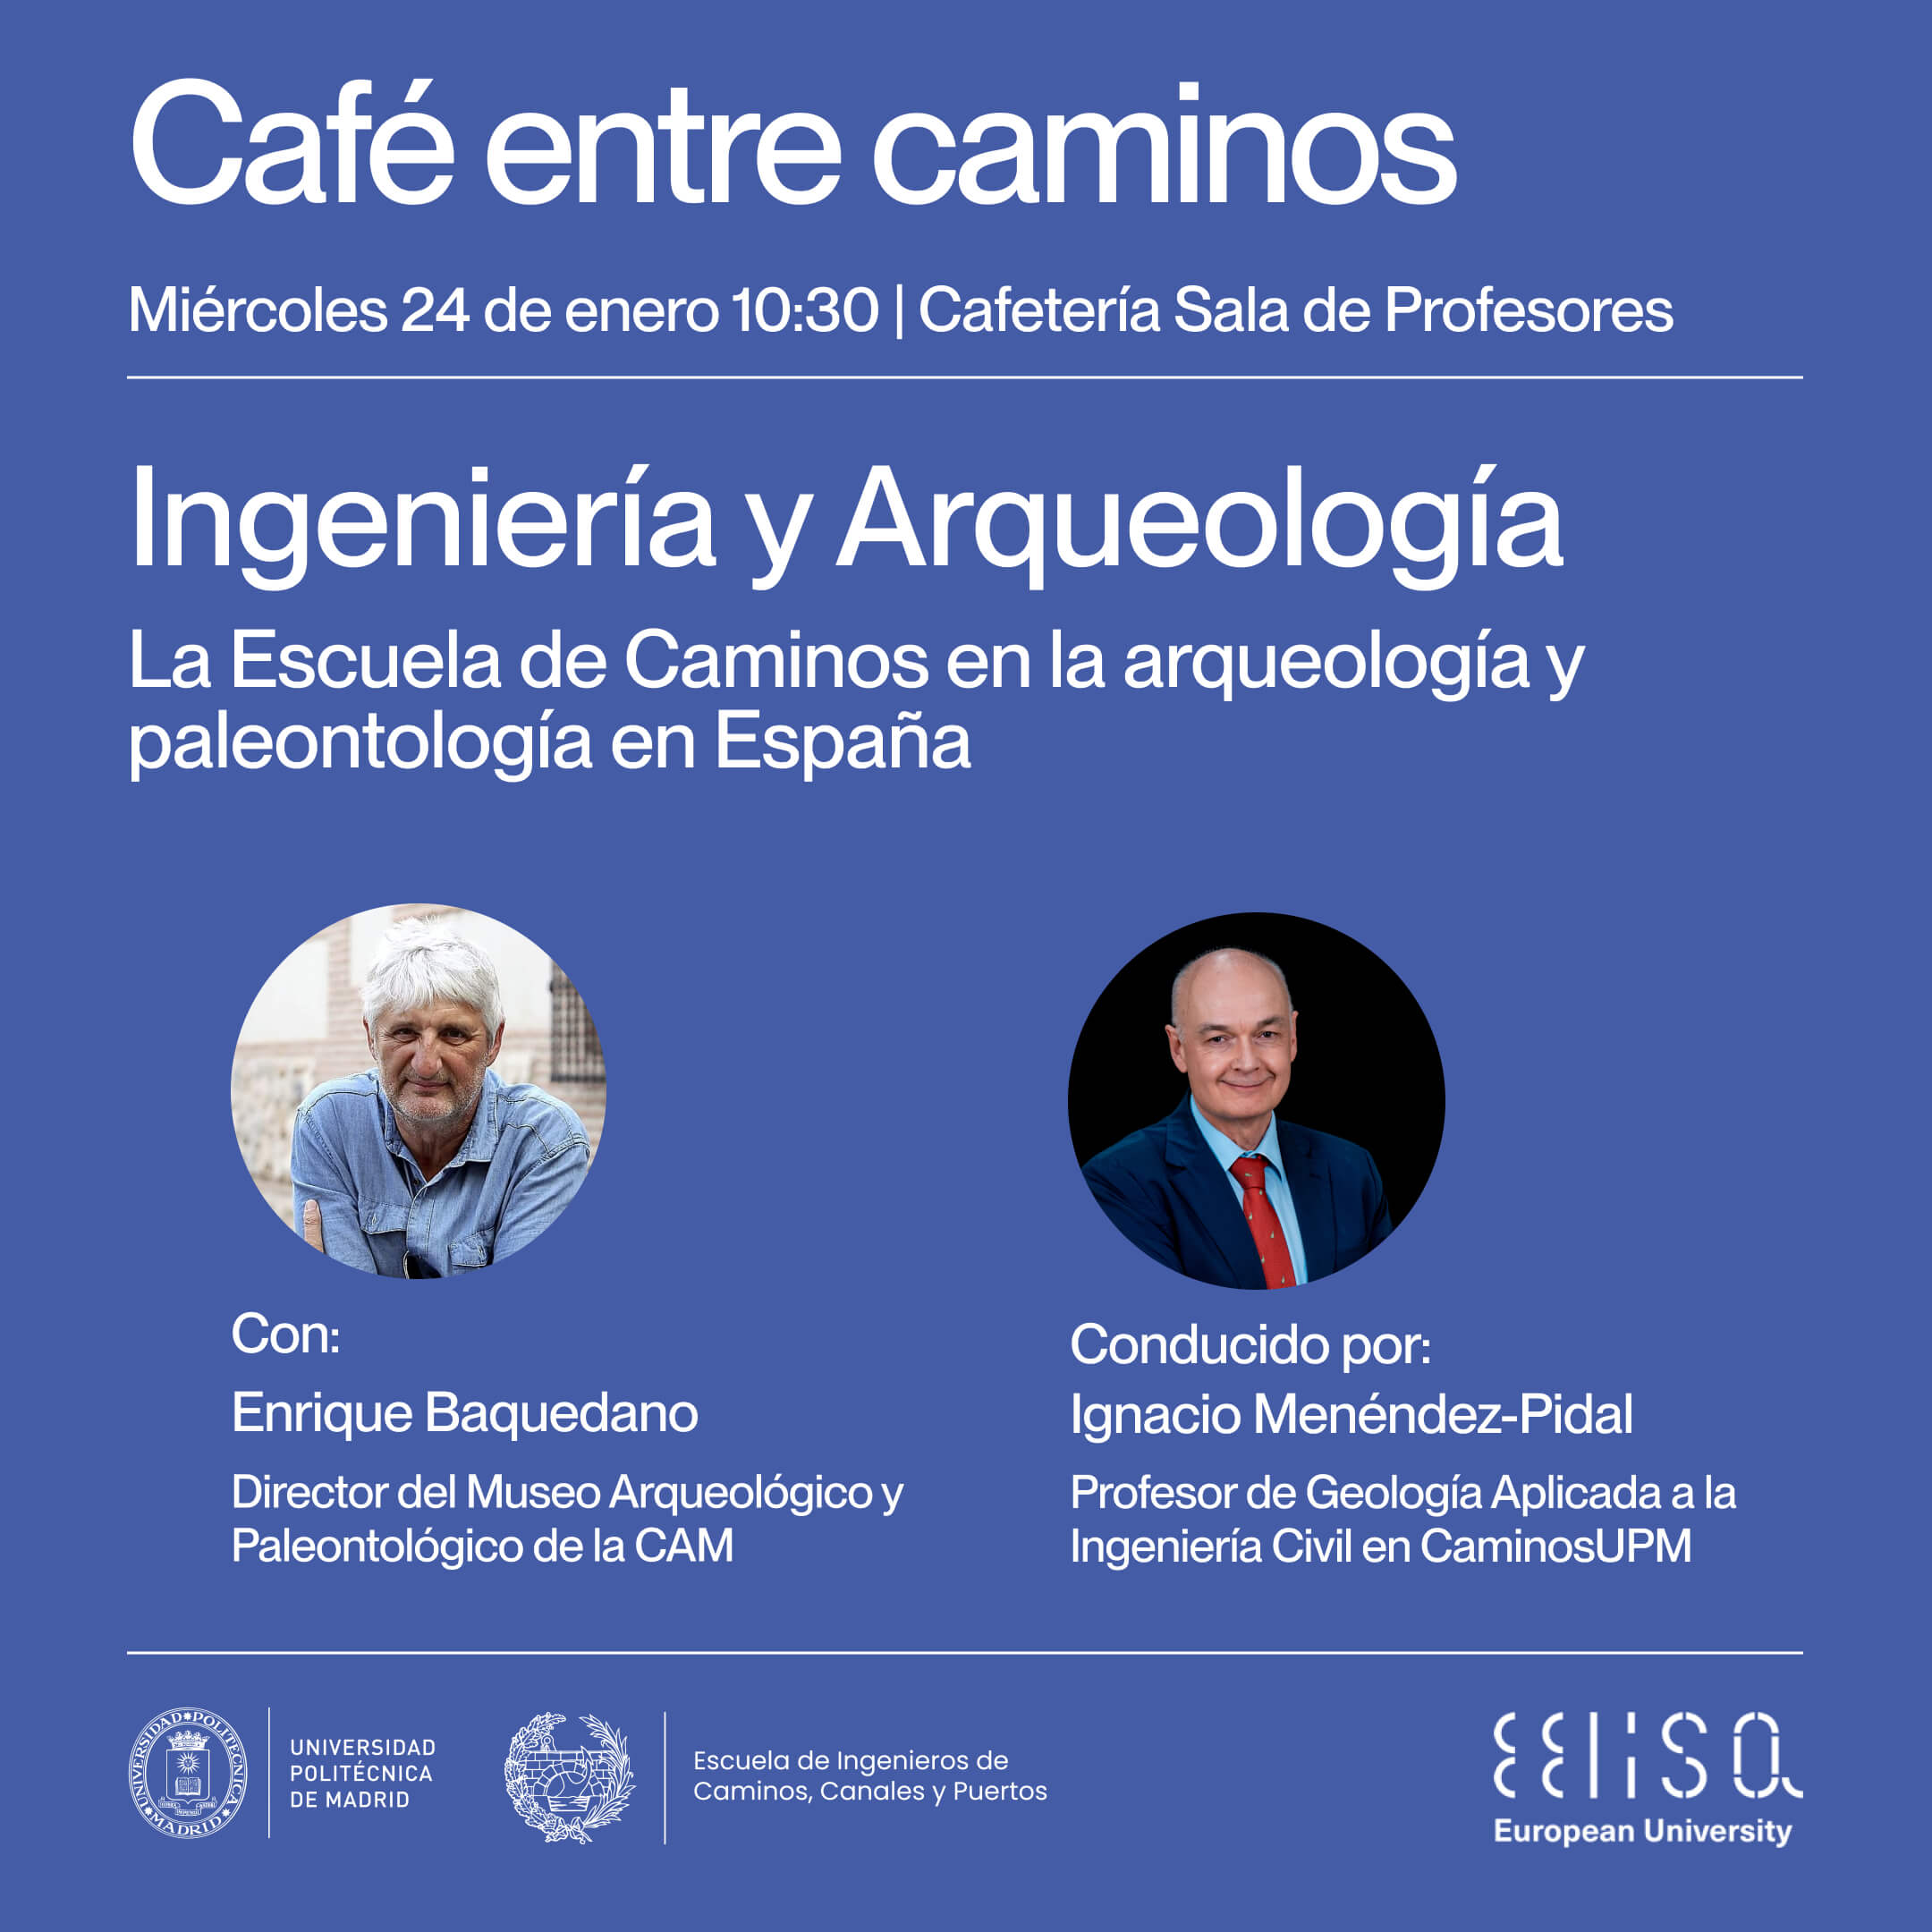 Ingeniería, Arqueología y Paleontología en el próximo «Café entre Caminos» con Enrique Baquedano